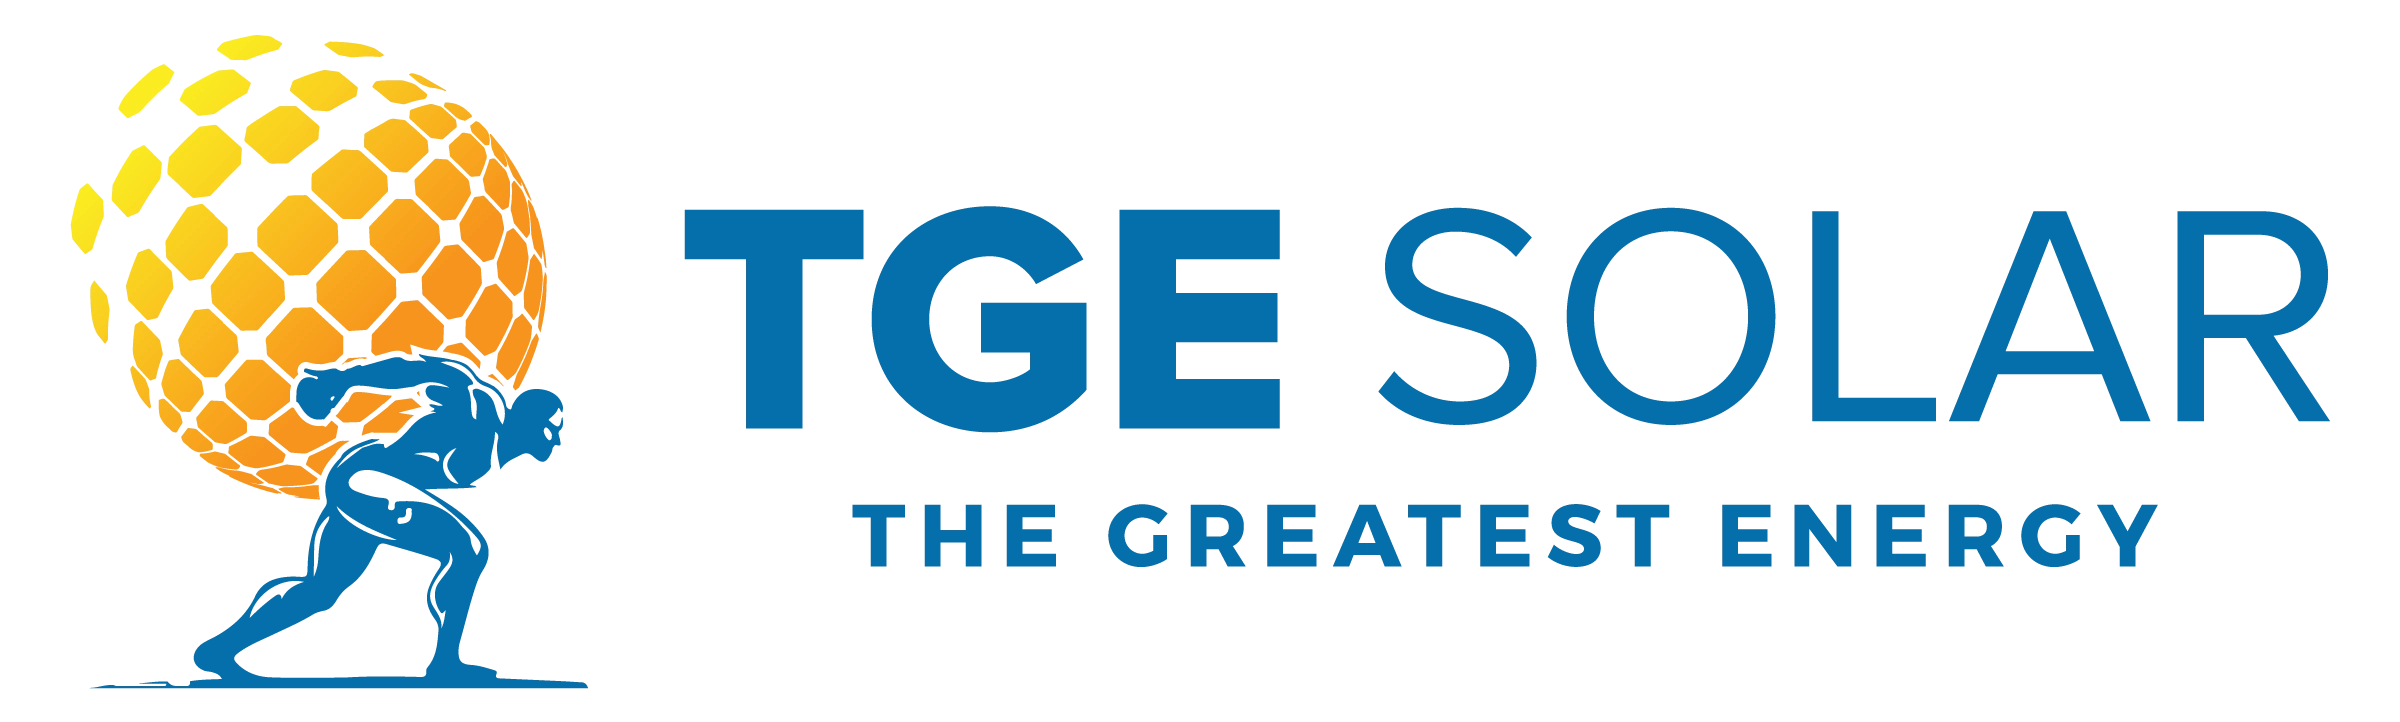 TGE Solar Logo